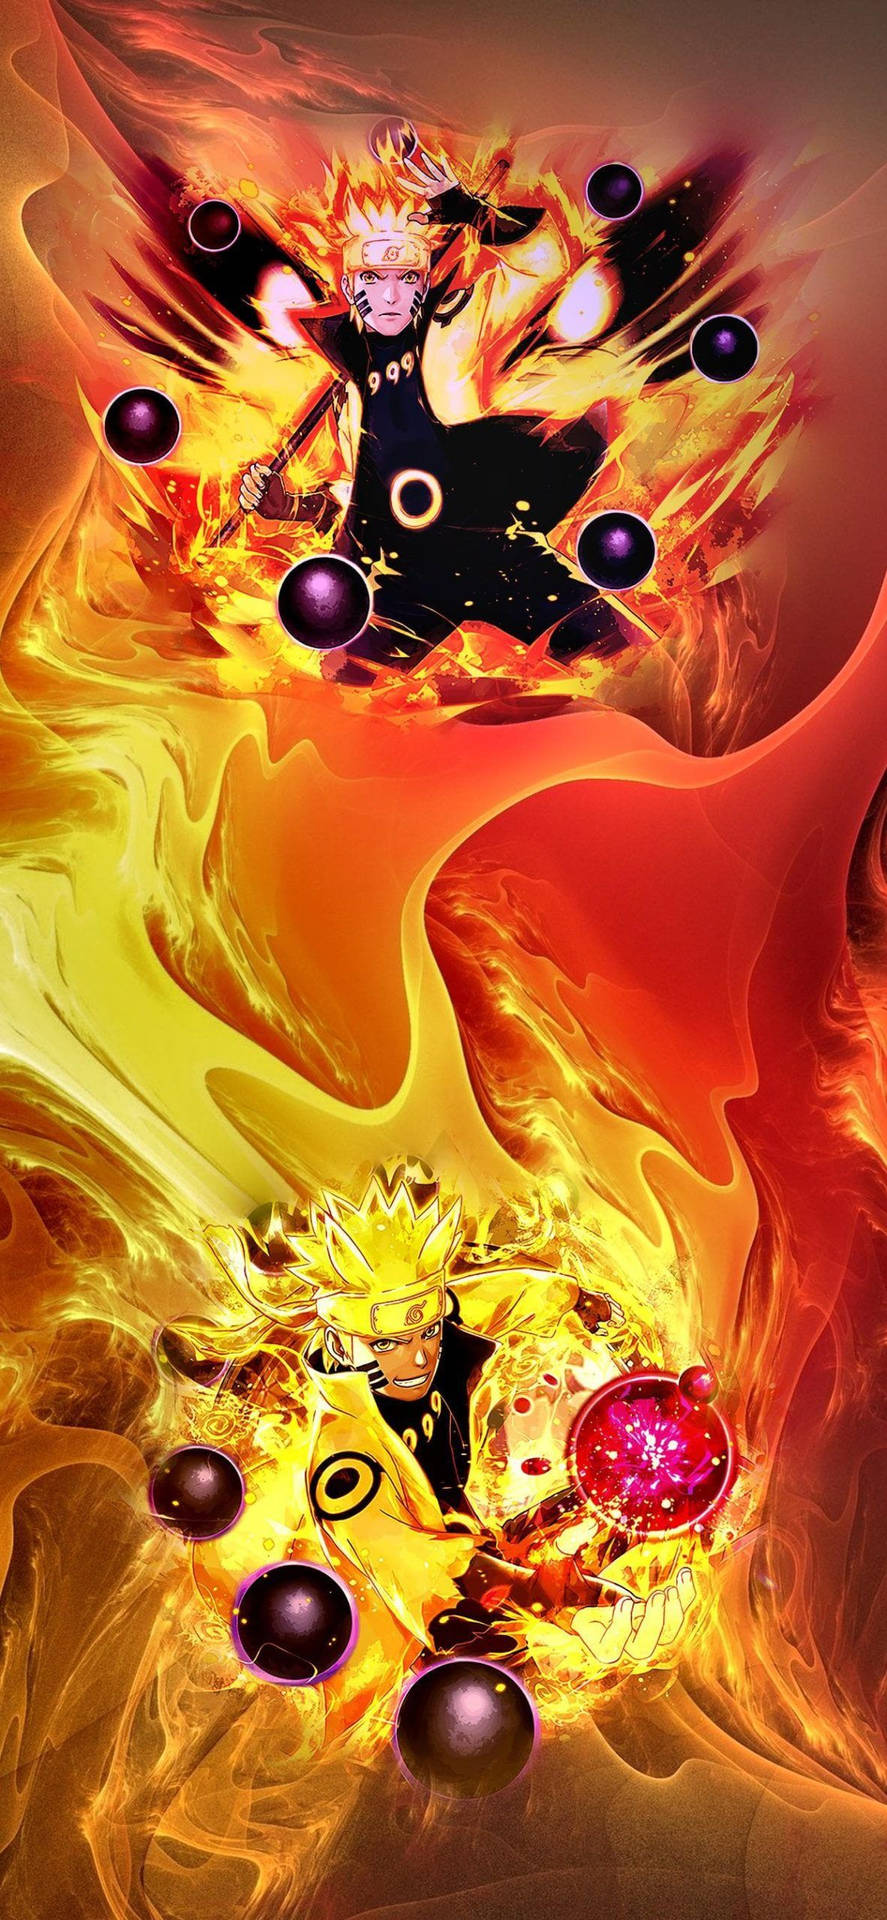 Upptäckkraften I Naruto's Sista Form På Din Dator- Eller Mobilskärms Bakgrundsbild! Wallpaper